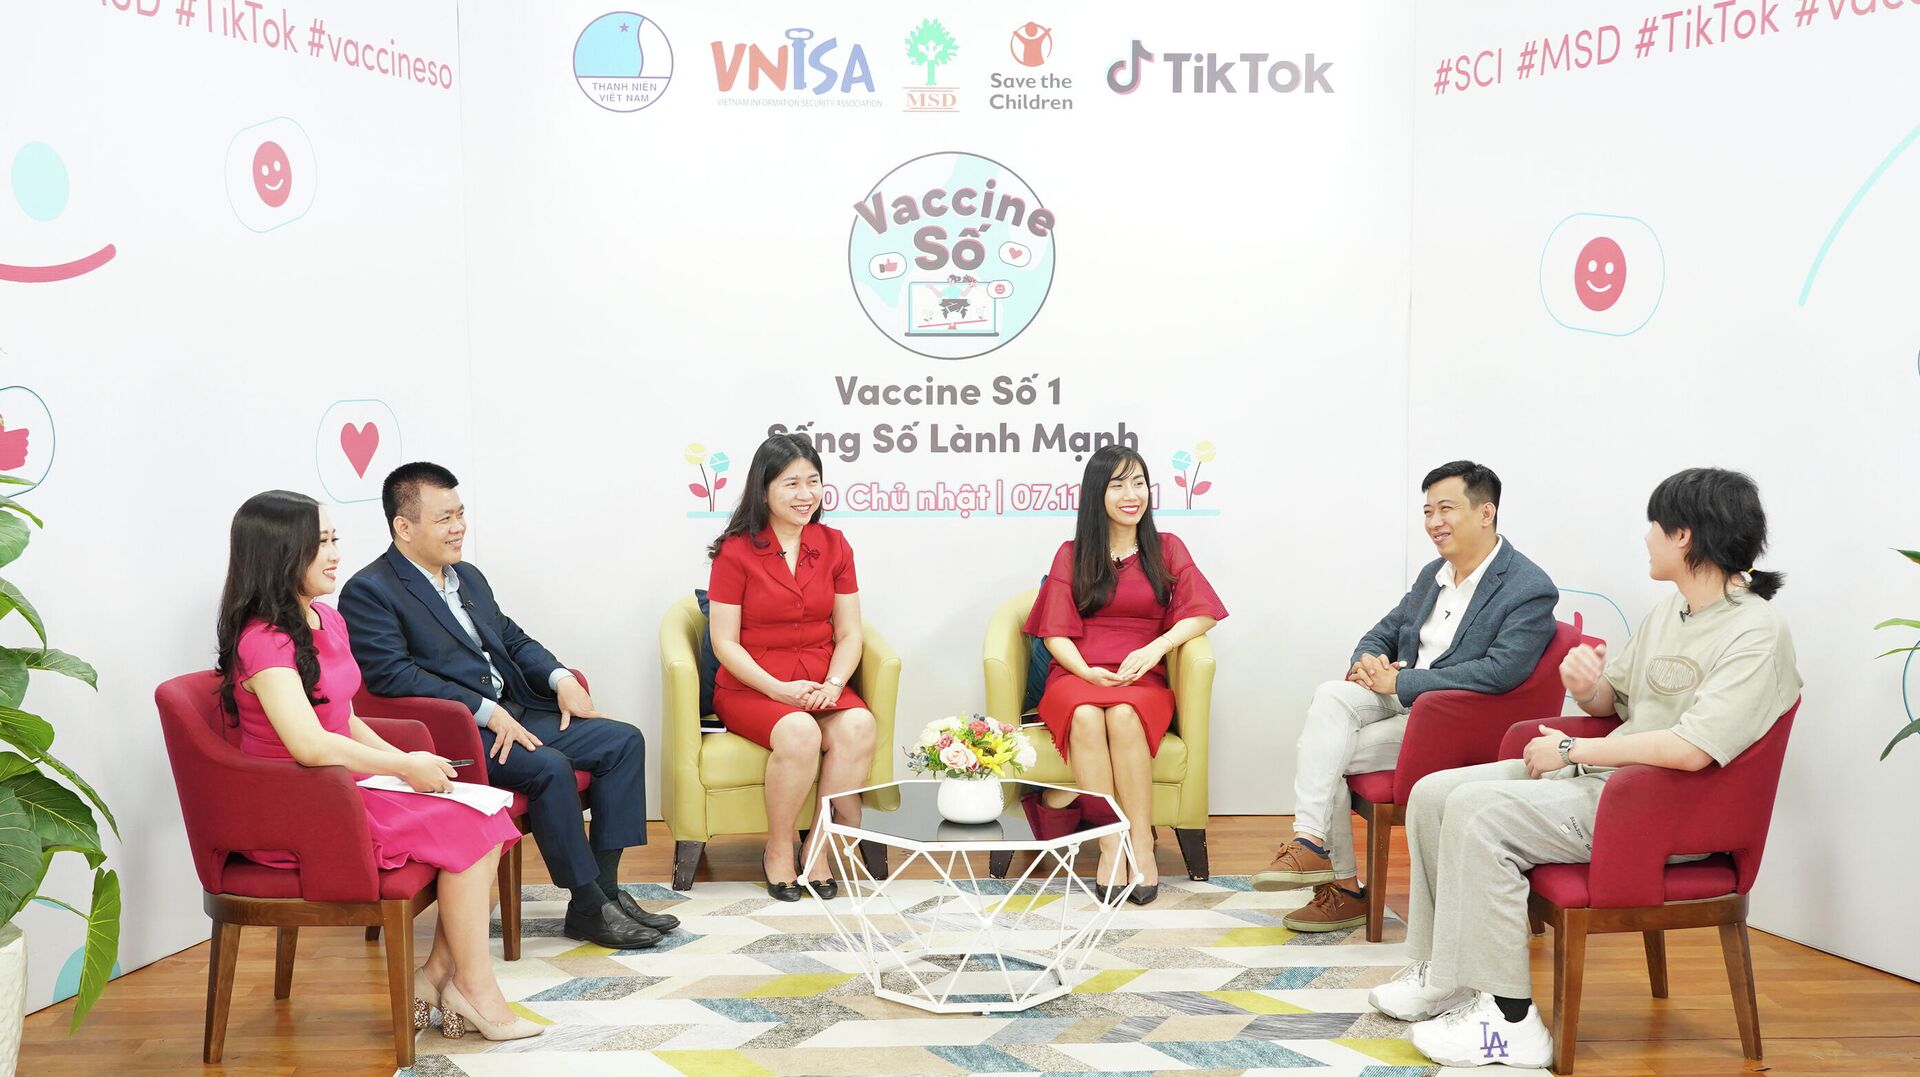 Buổi phát trực tiếp tập số 1 của chiến dịch Vaccine Số - “Sống số lành mạnh” trên kênh TikTok LIVE Việt Nam - Sputnik Việt Nam, 1920, 20.12.2021